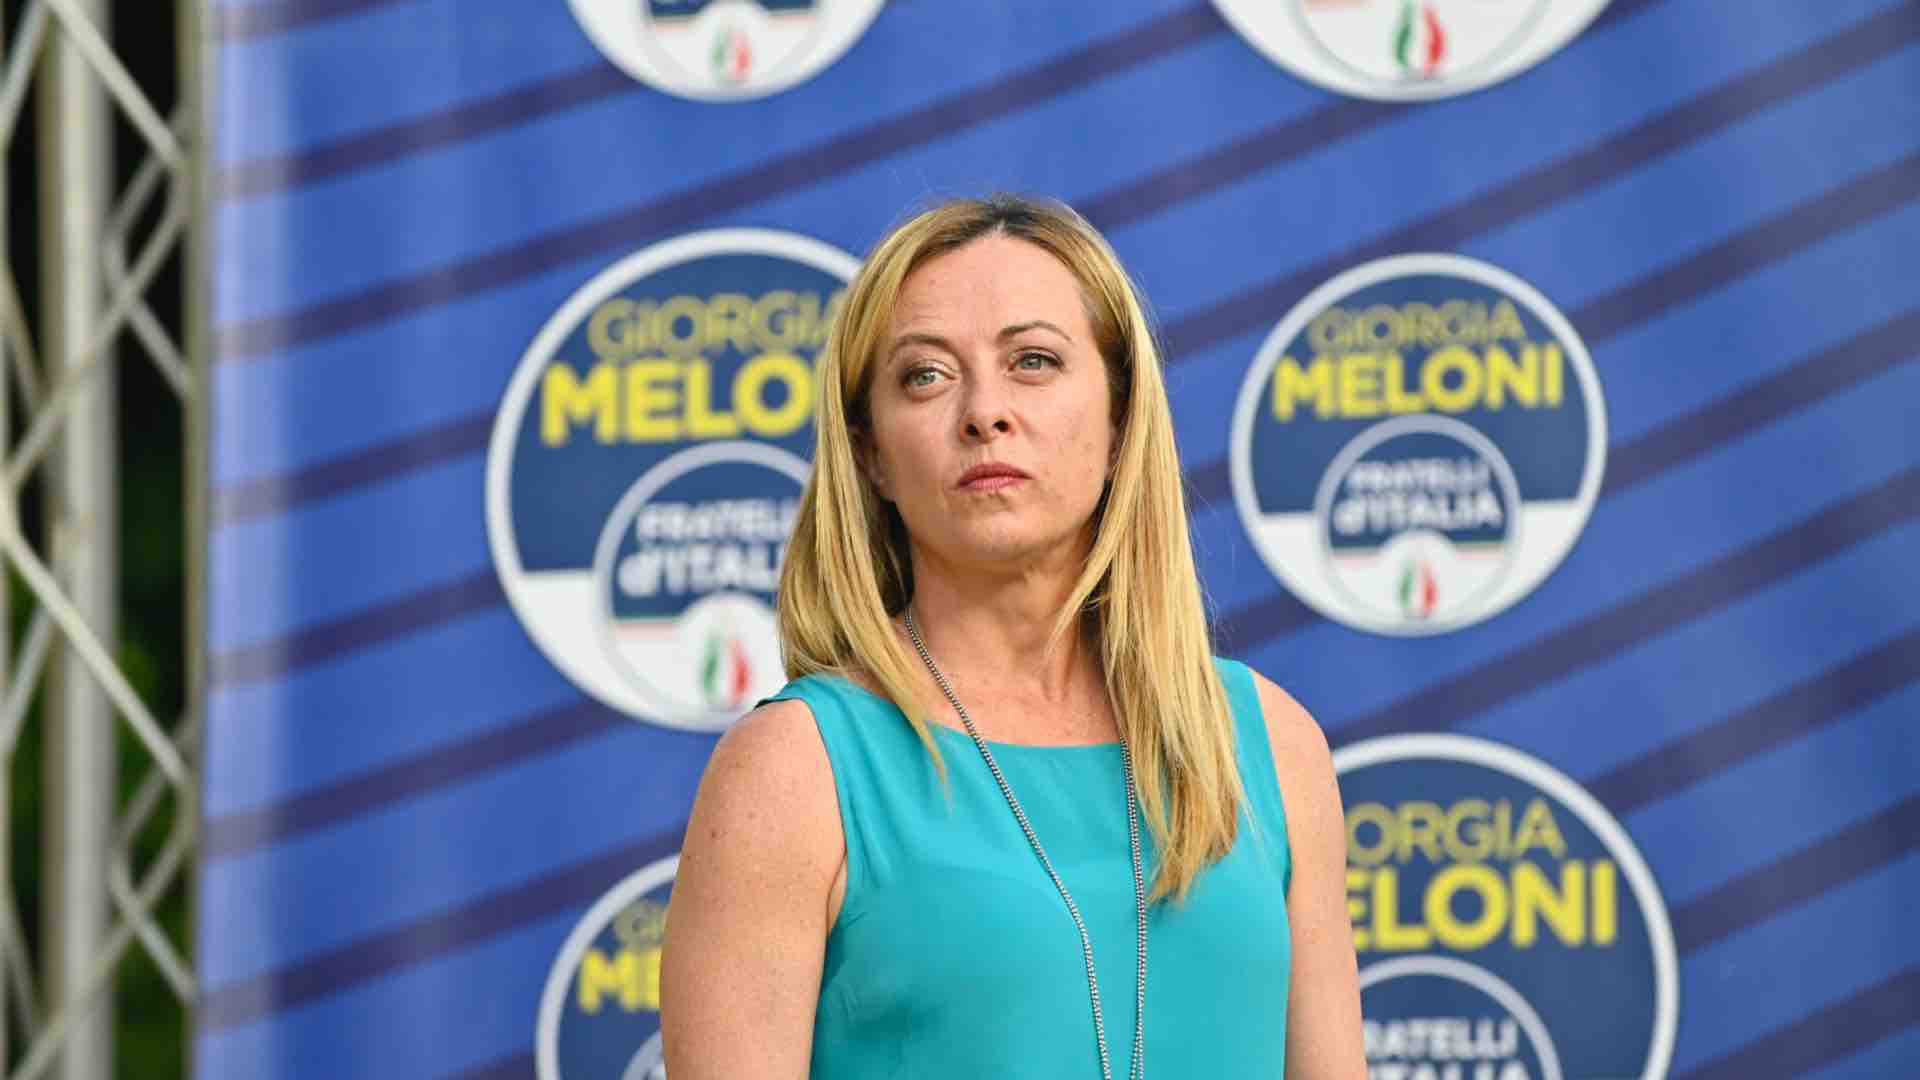 Giorgia Meloni, Fratelli d'Italia